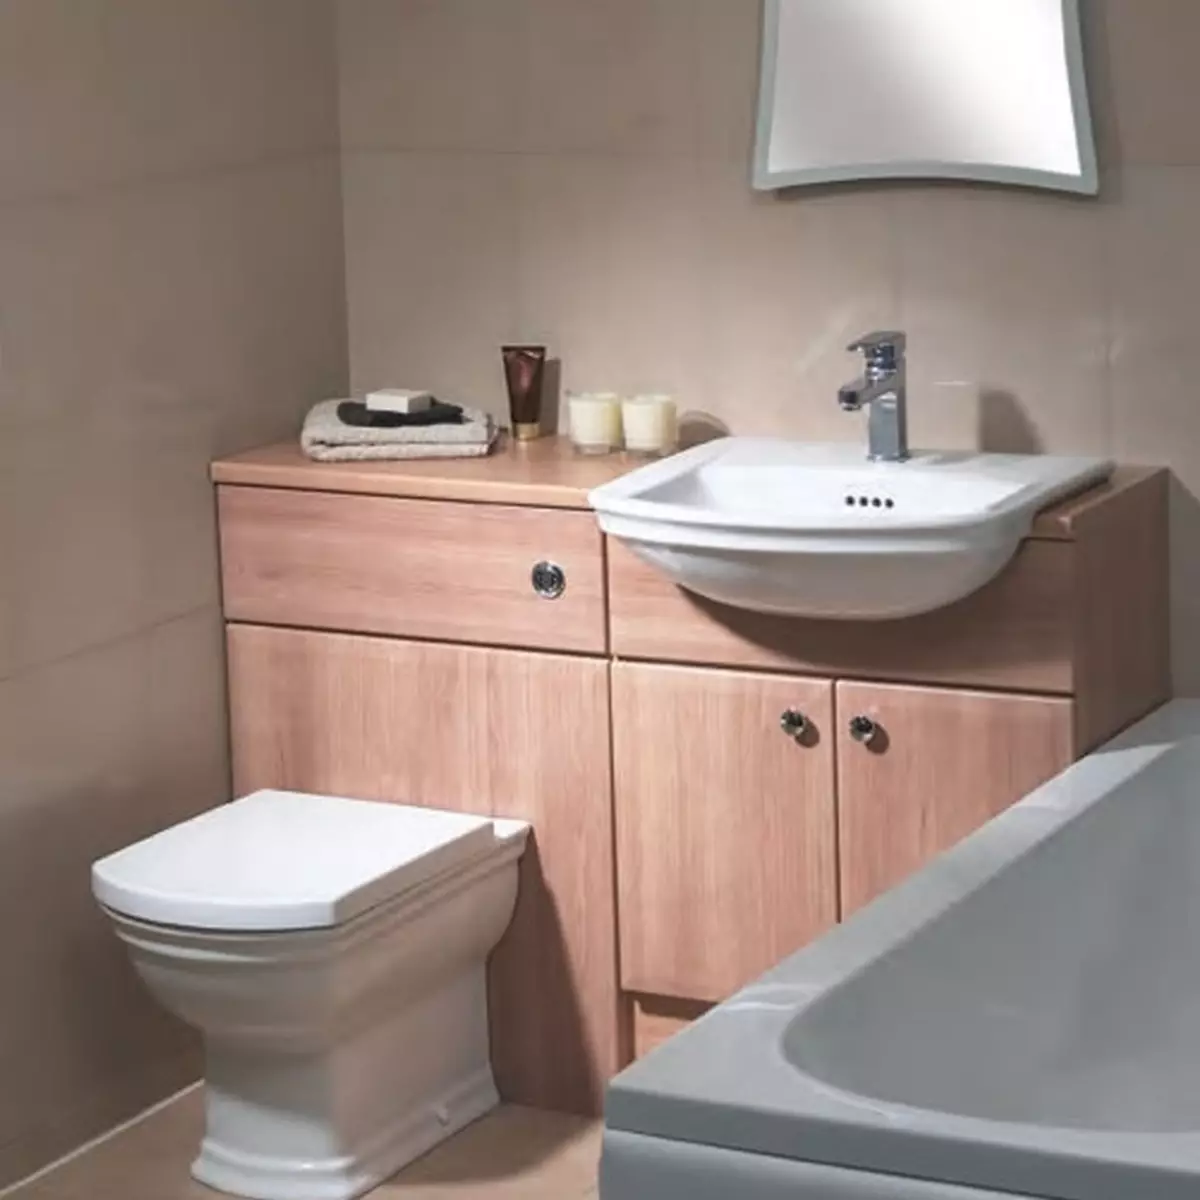 विट्रा शौचालय: निलंबित और उग्र तुर्की शौचालयों की विशेषताएं, मॉडल ज़ेंट्रम और सेंटो की समीक्षा, ढक्कन और आउटडोर सेरेनाडा के साथ Arkitekt कॉर्नर शौचालय, समीक्षा 10522_13